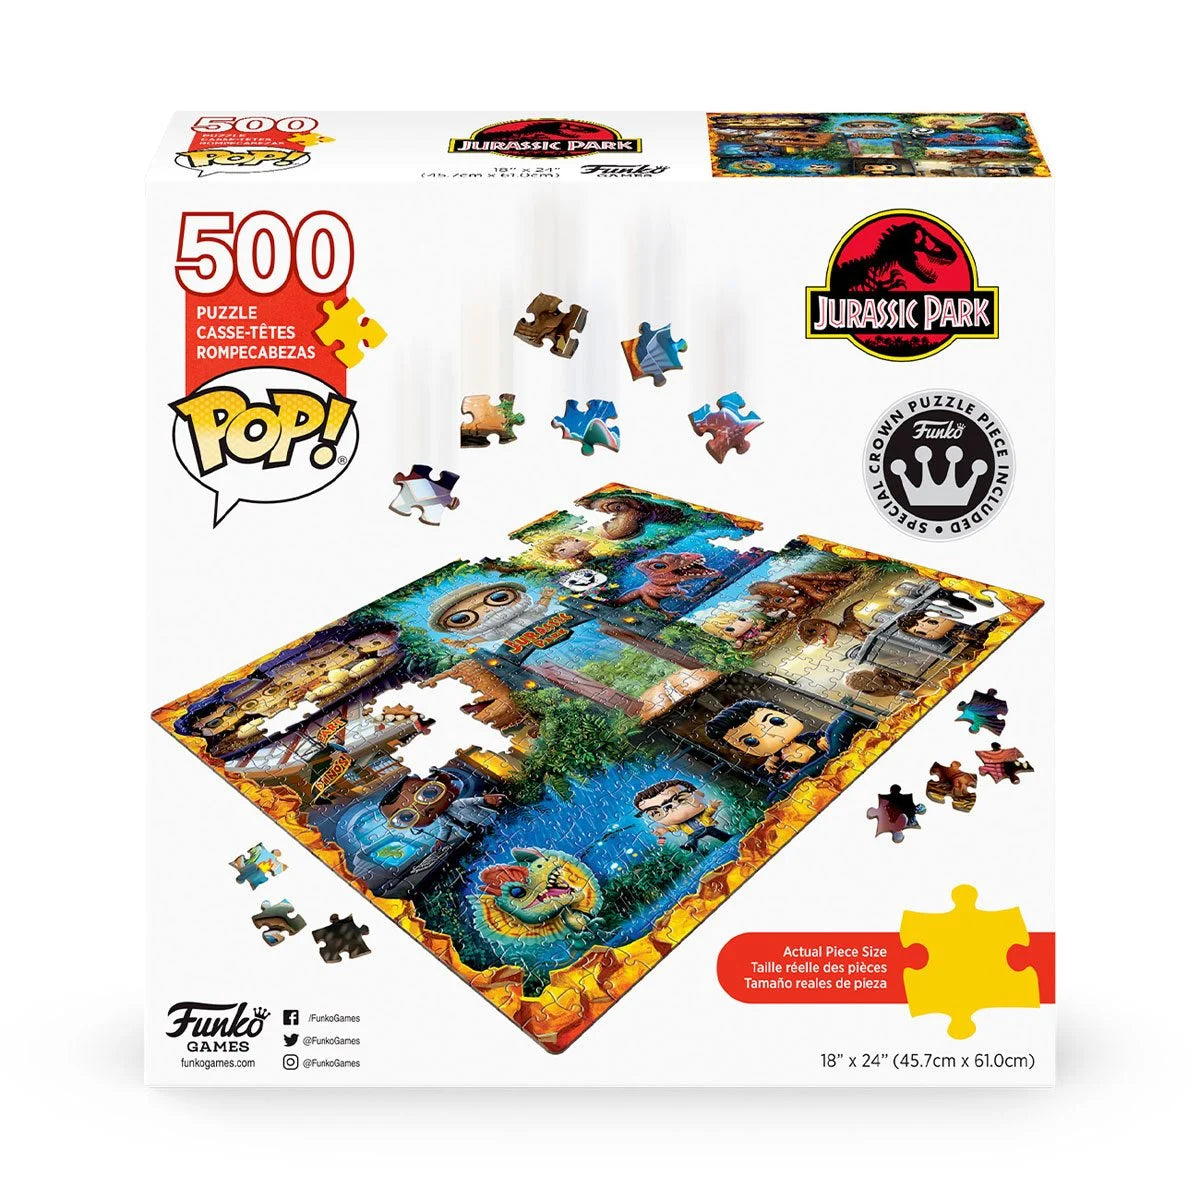 Jurassic Park 500-Piece Pop! Puzzle